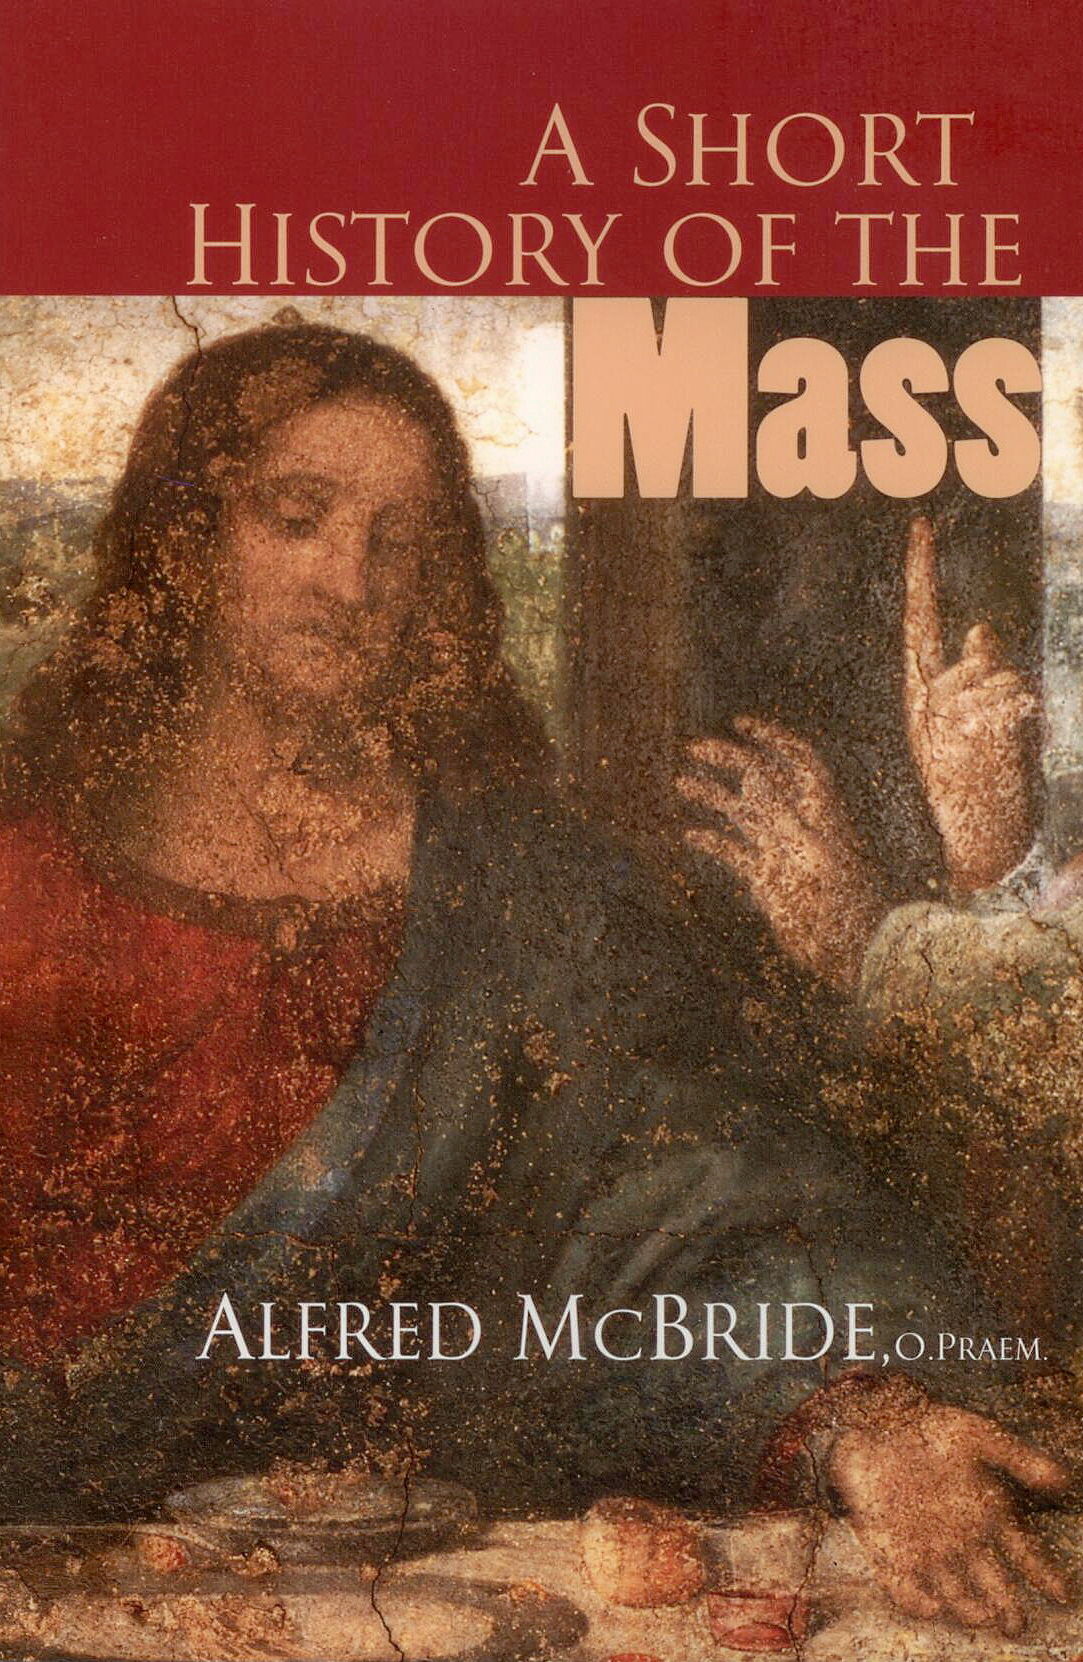 A Short History Of The Mass by Alfred McBride, O. PRAEM